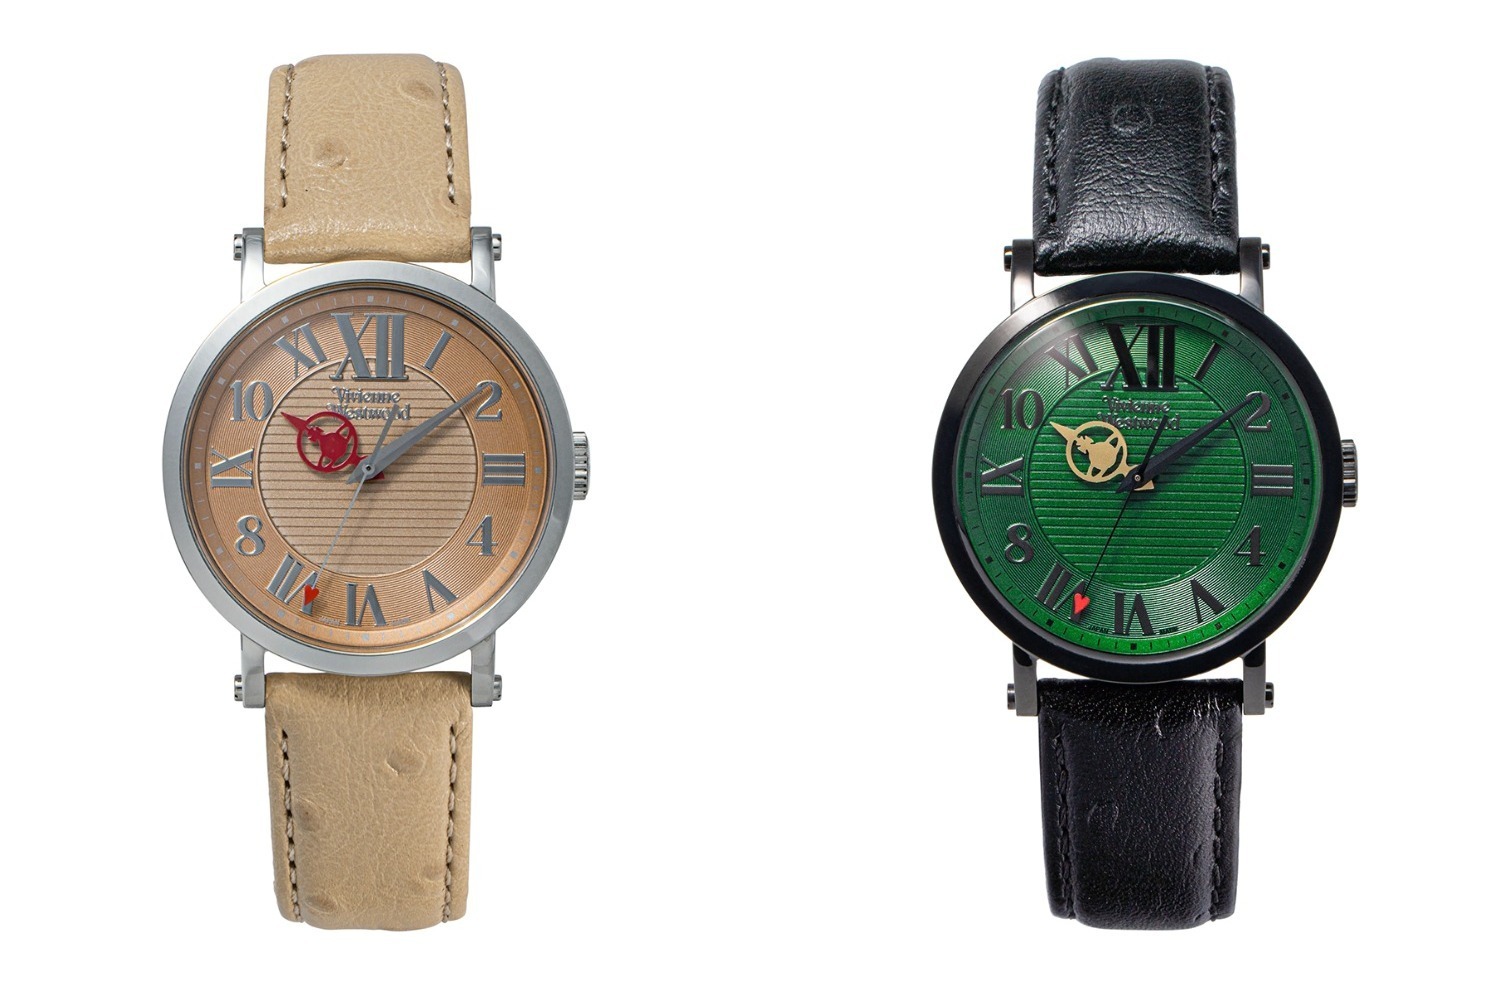 ヴィヴィアン・ウエストウッド アクセサリー「ORB」ロゴの腕時計